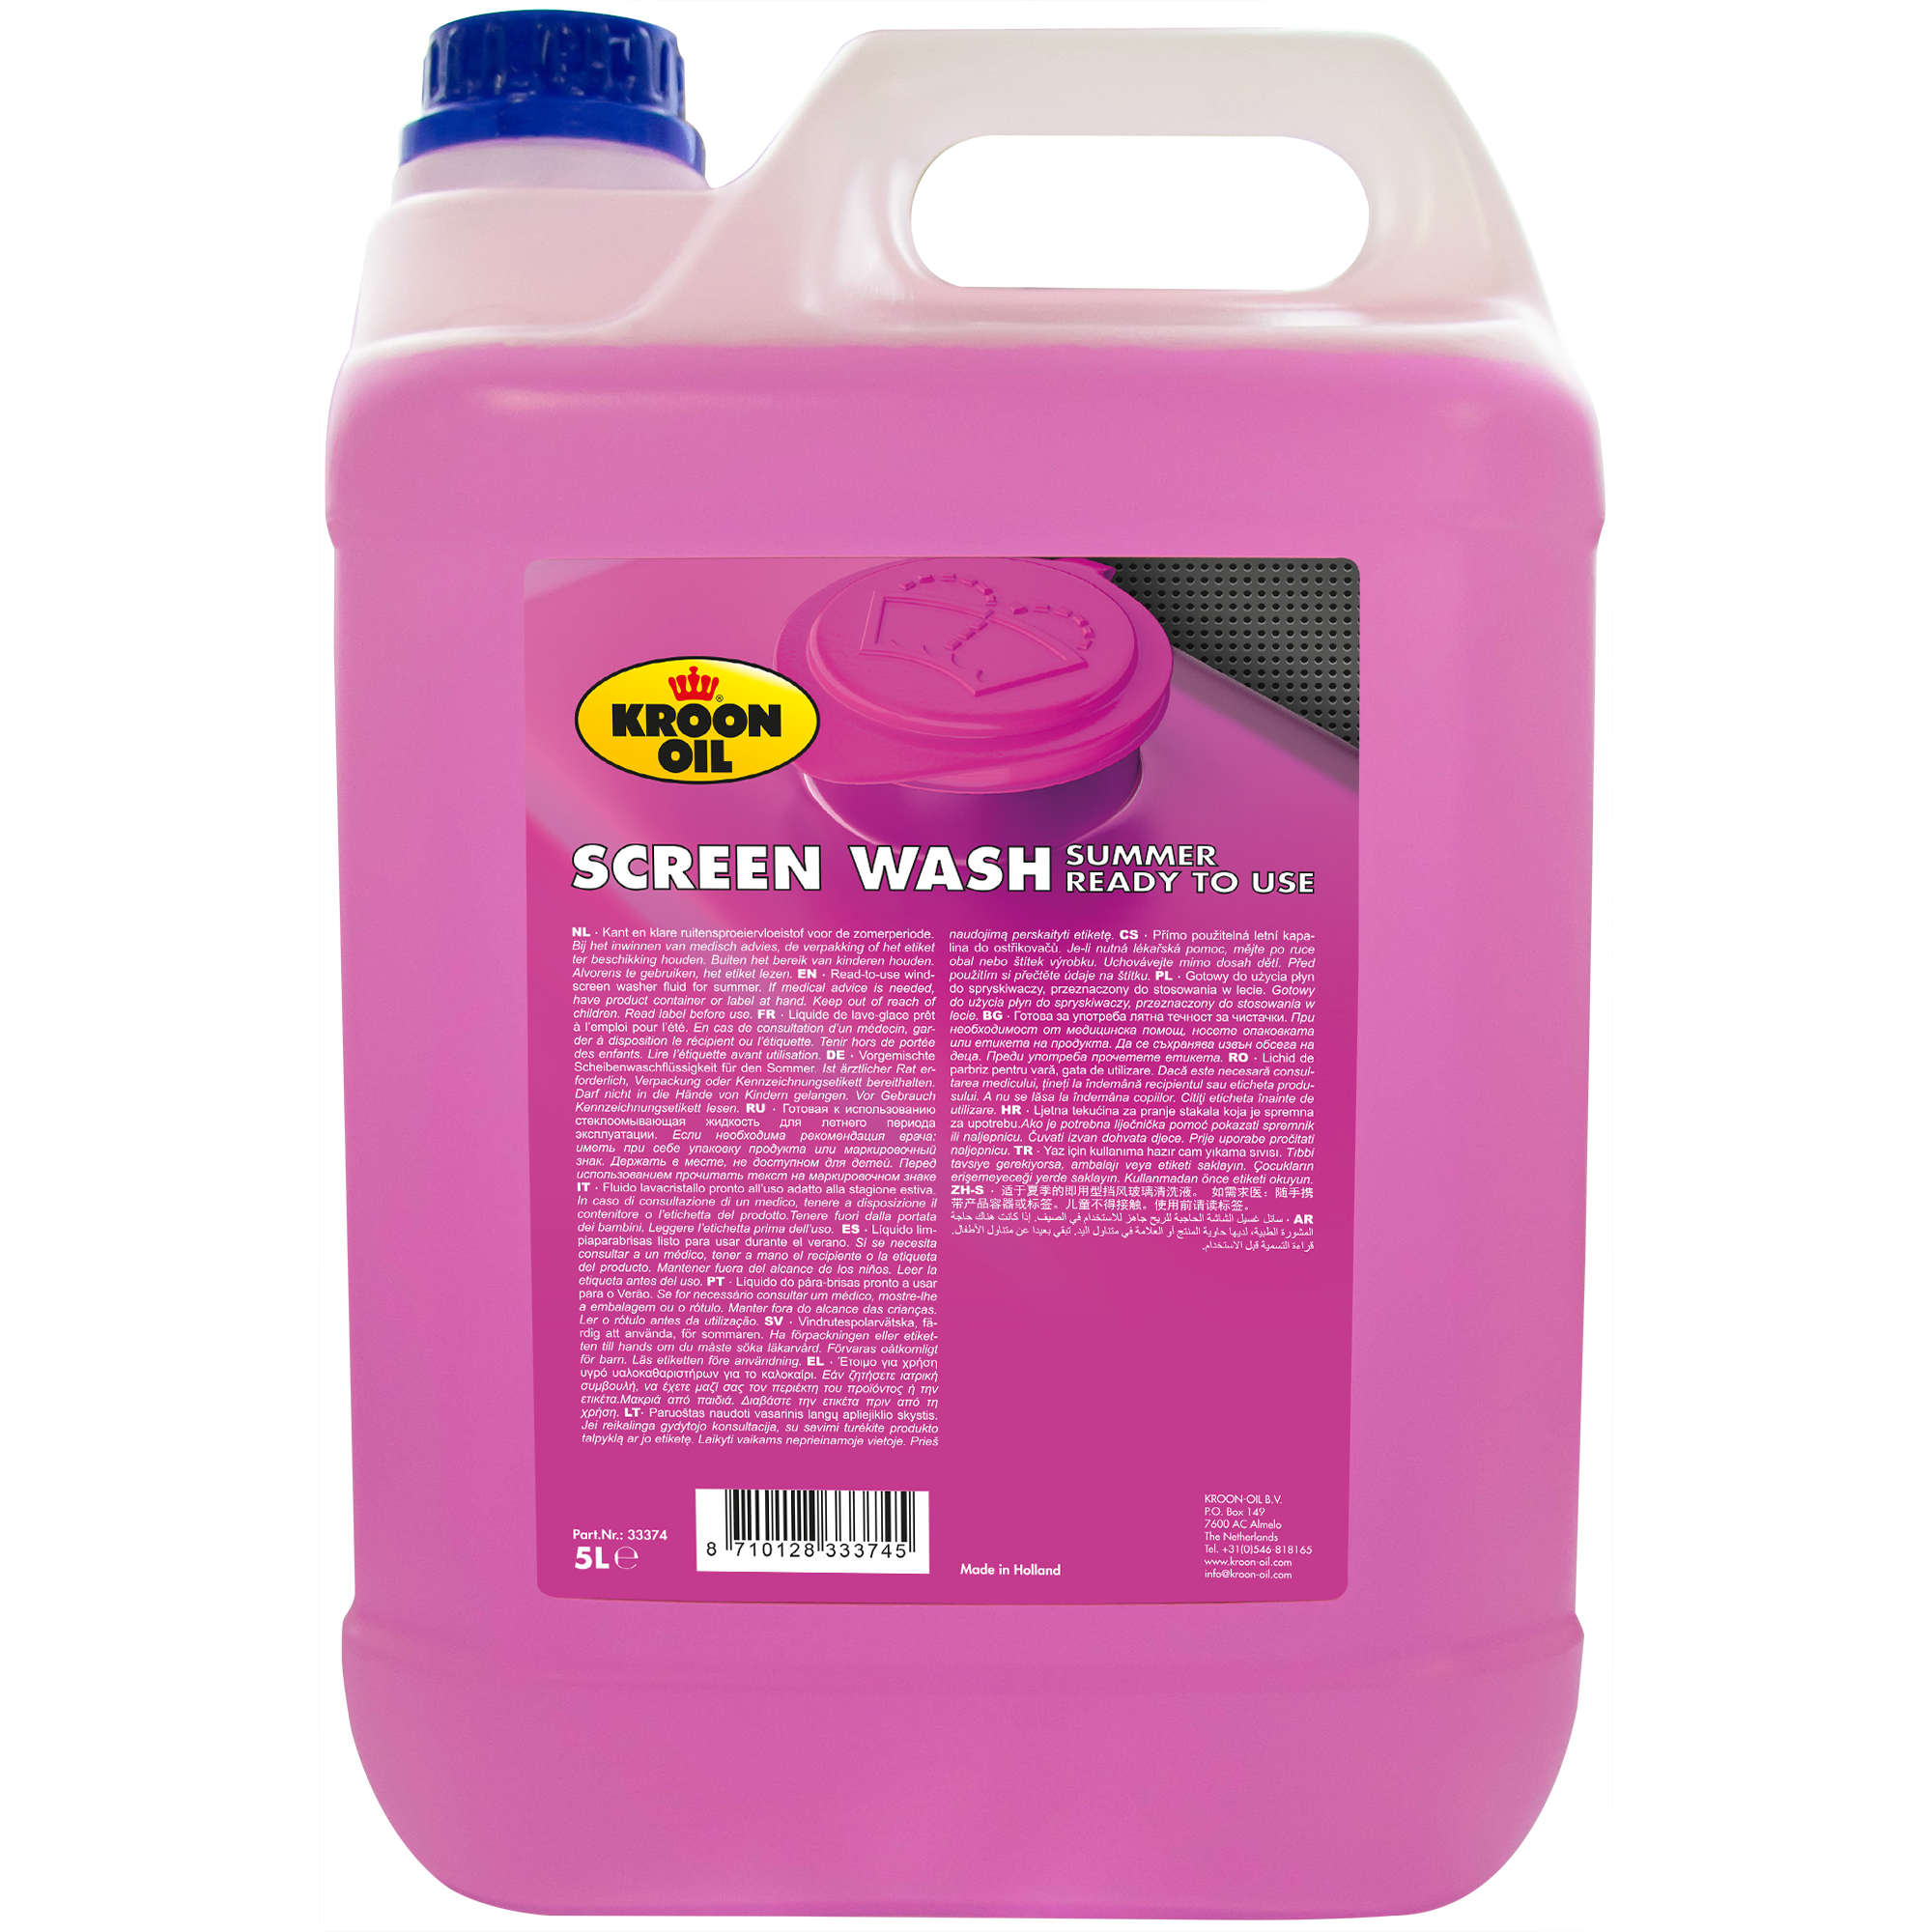 33374-5 Screen Wash Summer is een krachtige ruitensproeiervloeistof voor de zomer.